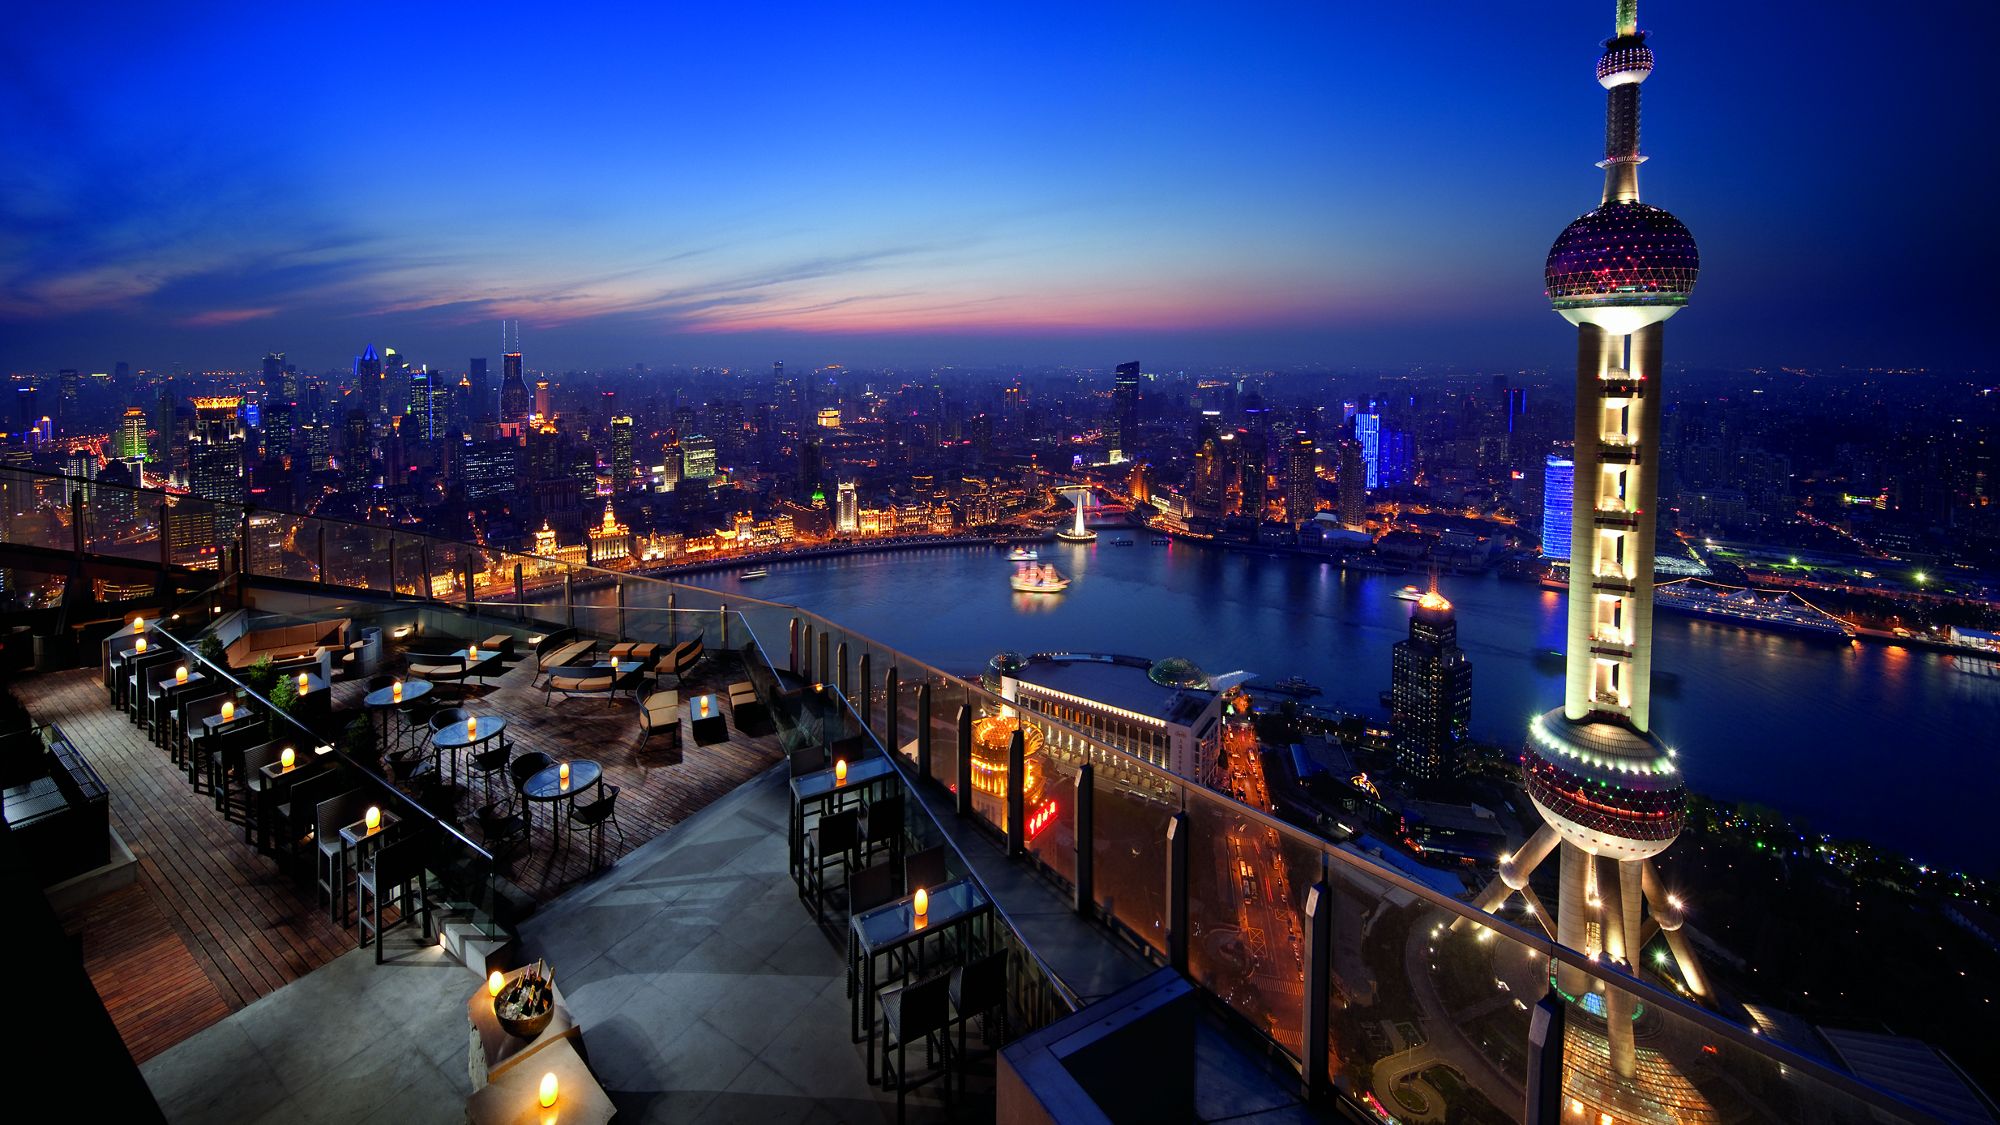 The Ritz-Carlton Shanghai